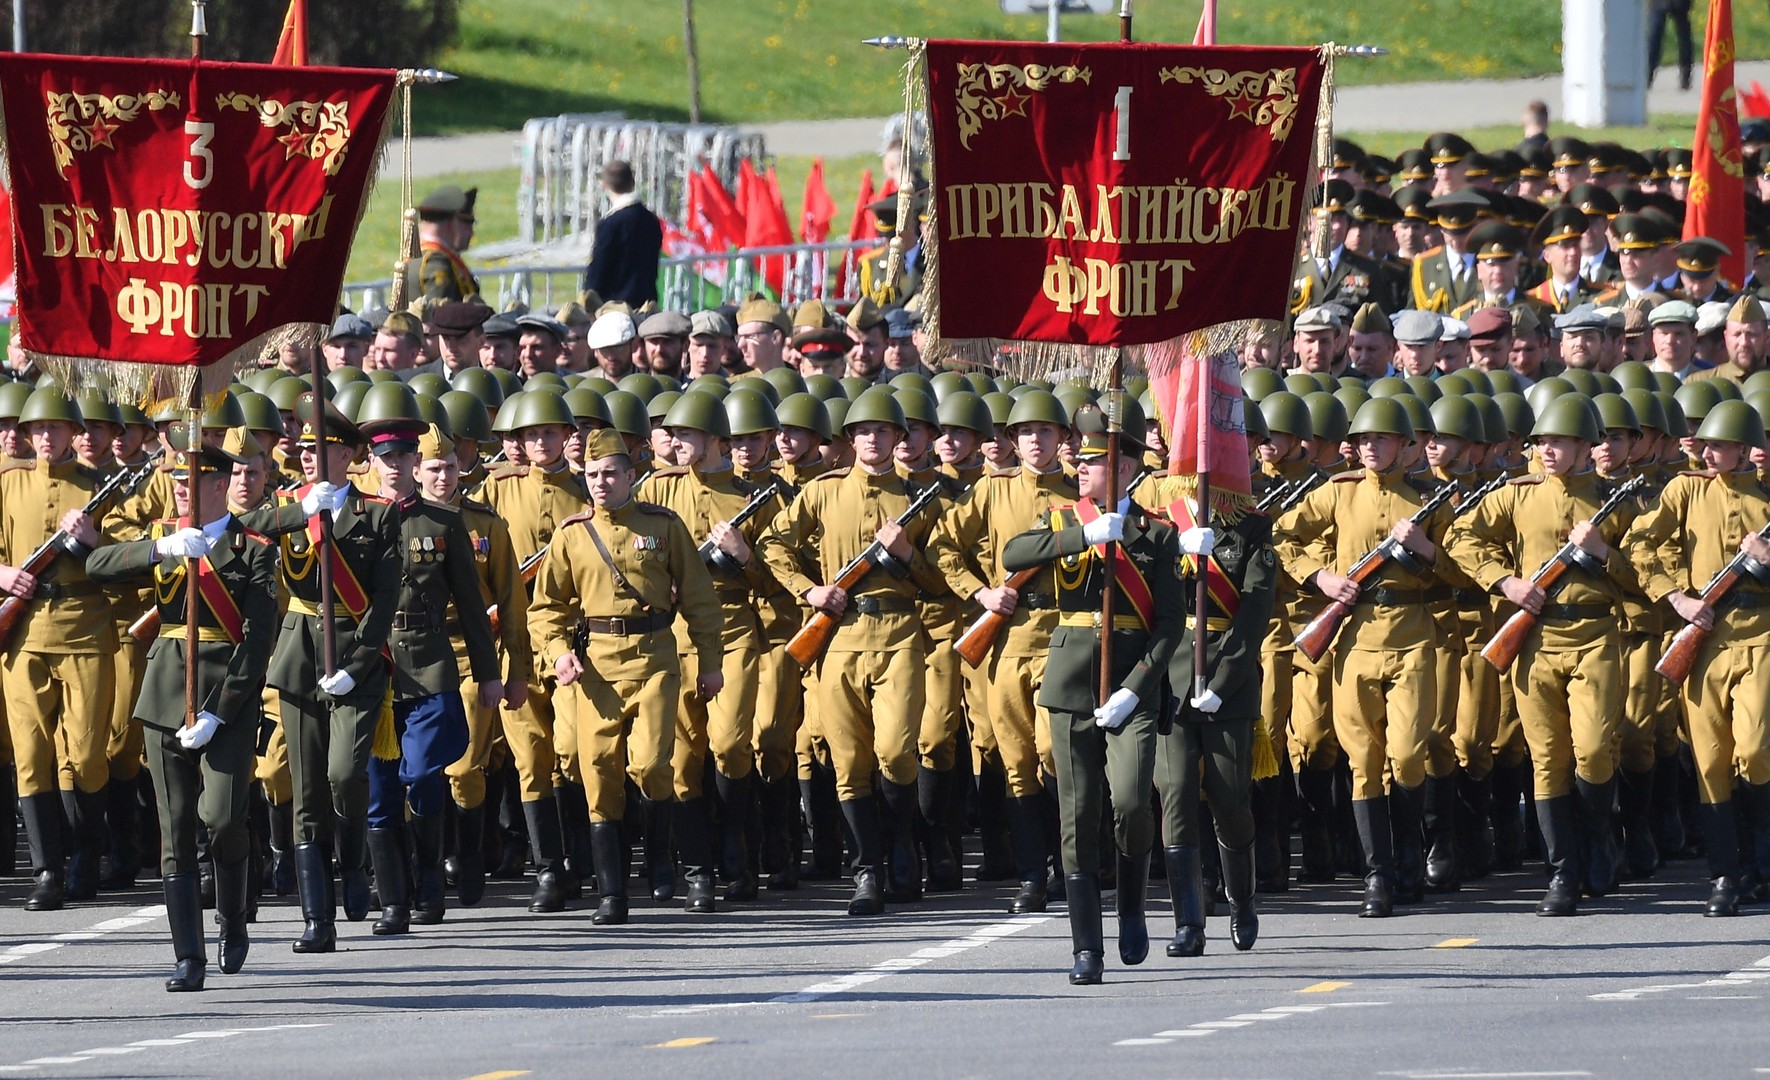 Sieg oder Corona? Nachbetrachtung einer umstrittenen Parade in Weißrussland